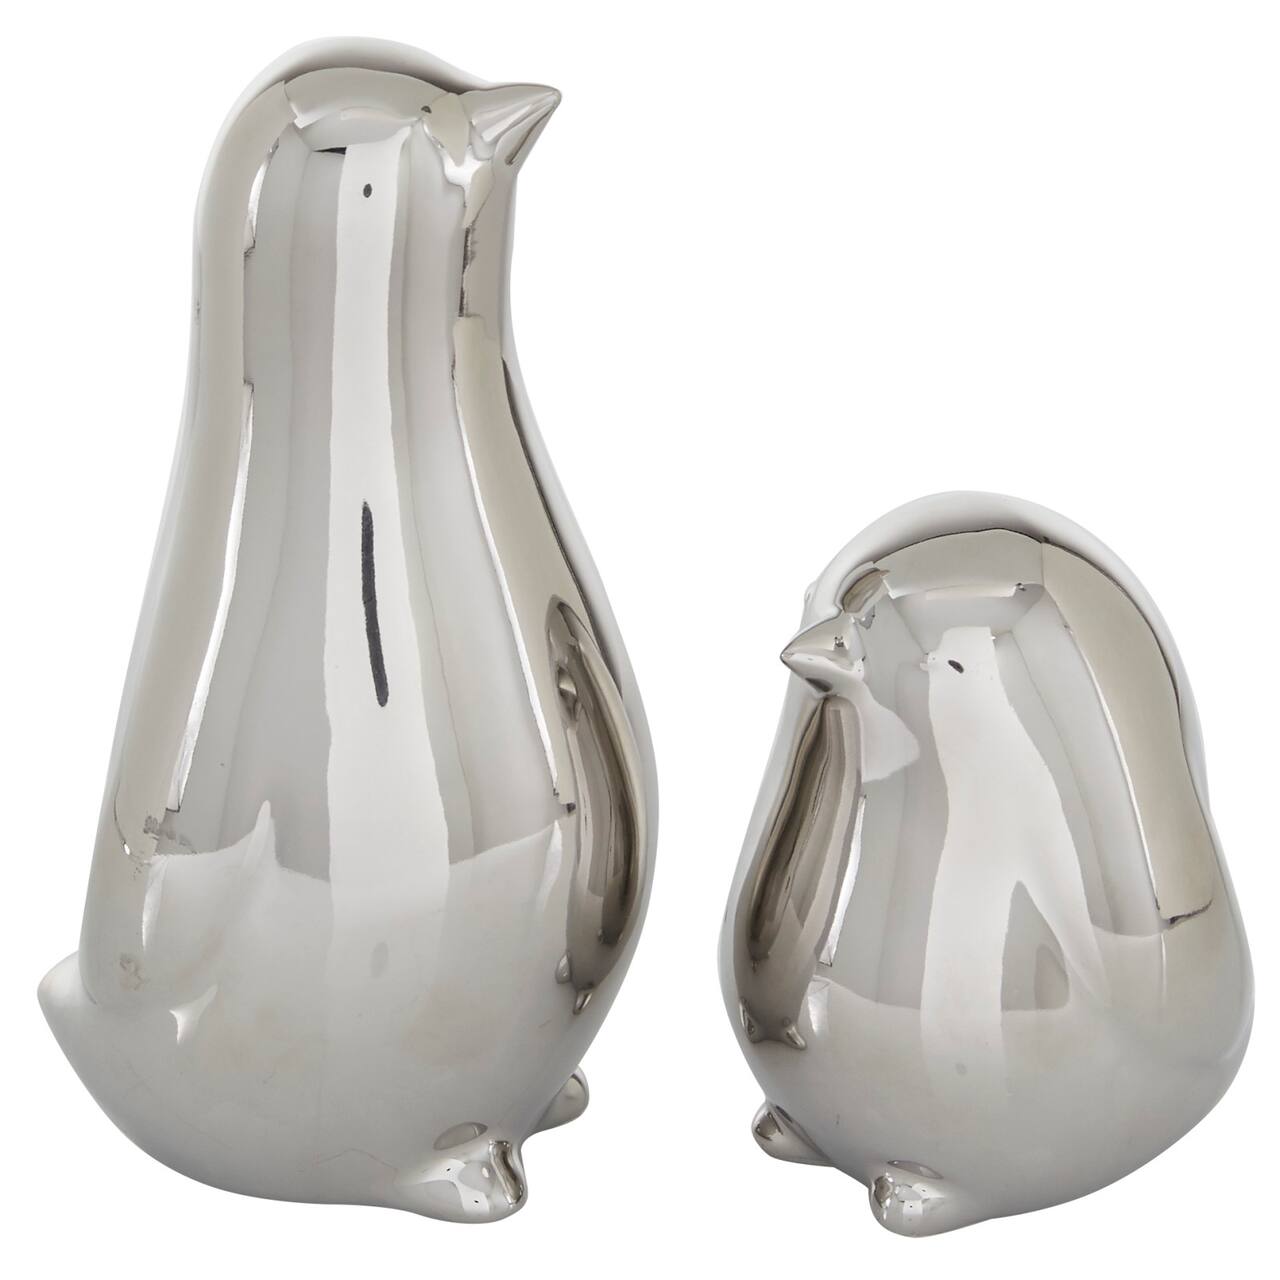 The Novogratz Silver Porcelain Contemporary Bird Sculpture Set